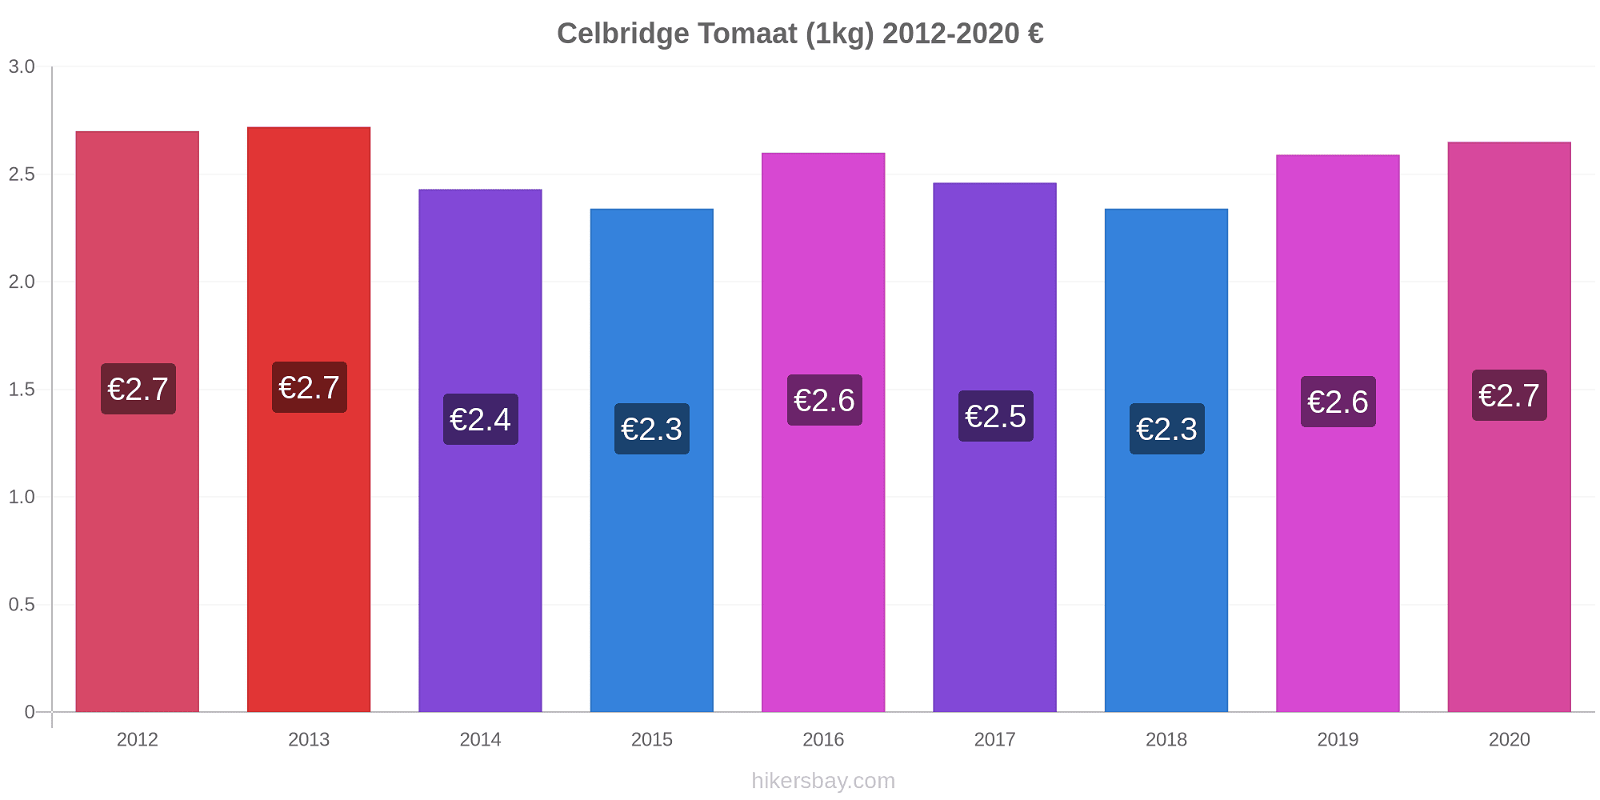 Celbridge prijswijzigingen Tomaat (1kg) hikersbay.com